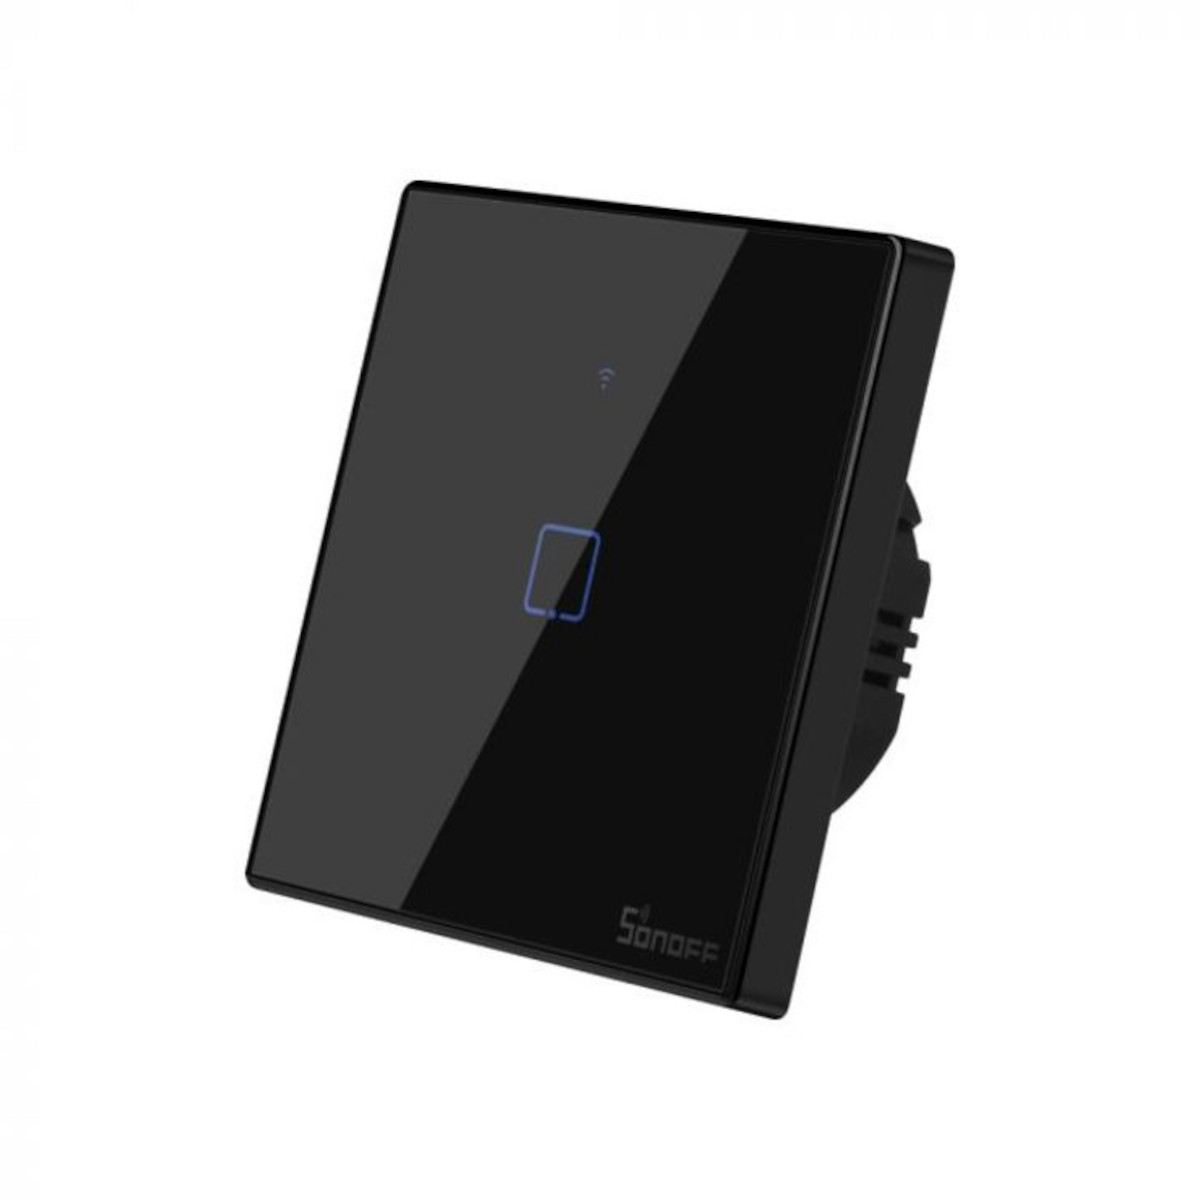 SONOFF WiFi Smart Wandschalter - 1 Taster - schwarz, Frontansicht, vor weißem Hintergrund